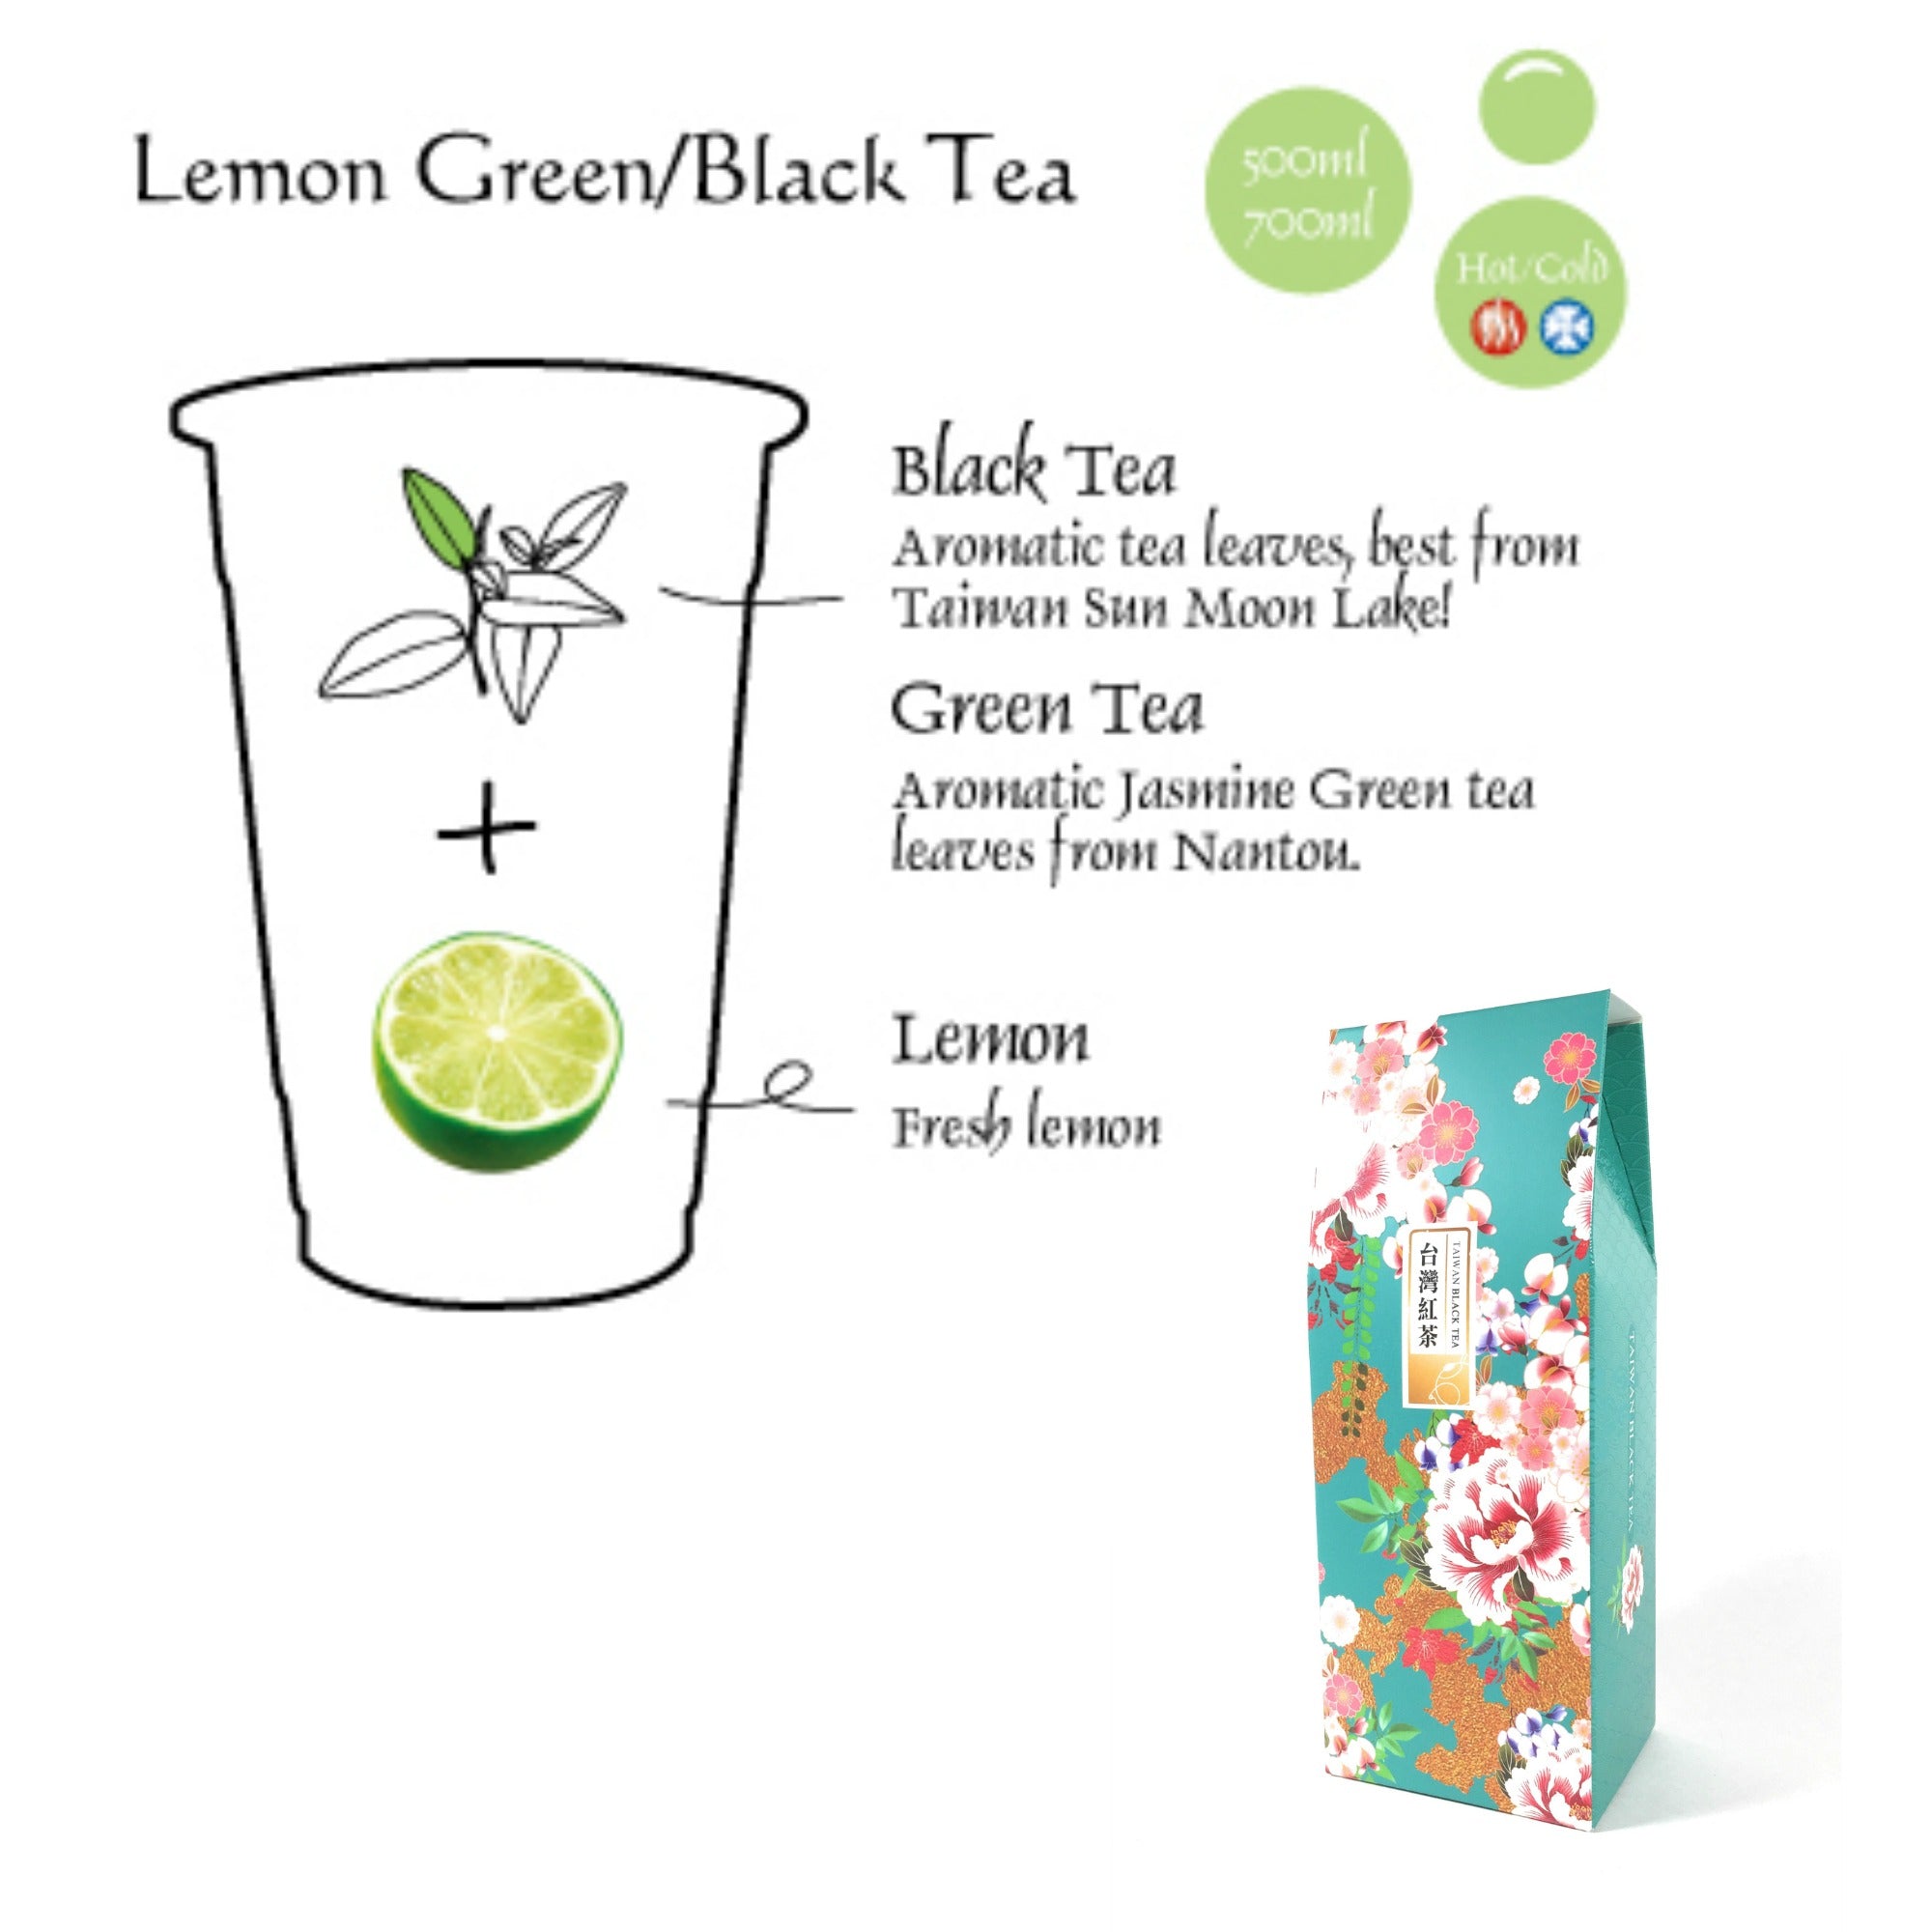 Taiwan Black Tea Loose Leaf Sun Moon Lake Premium Grade Ruby 18 - 2 Pack Gift - PJT prime